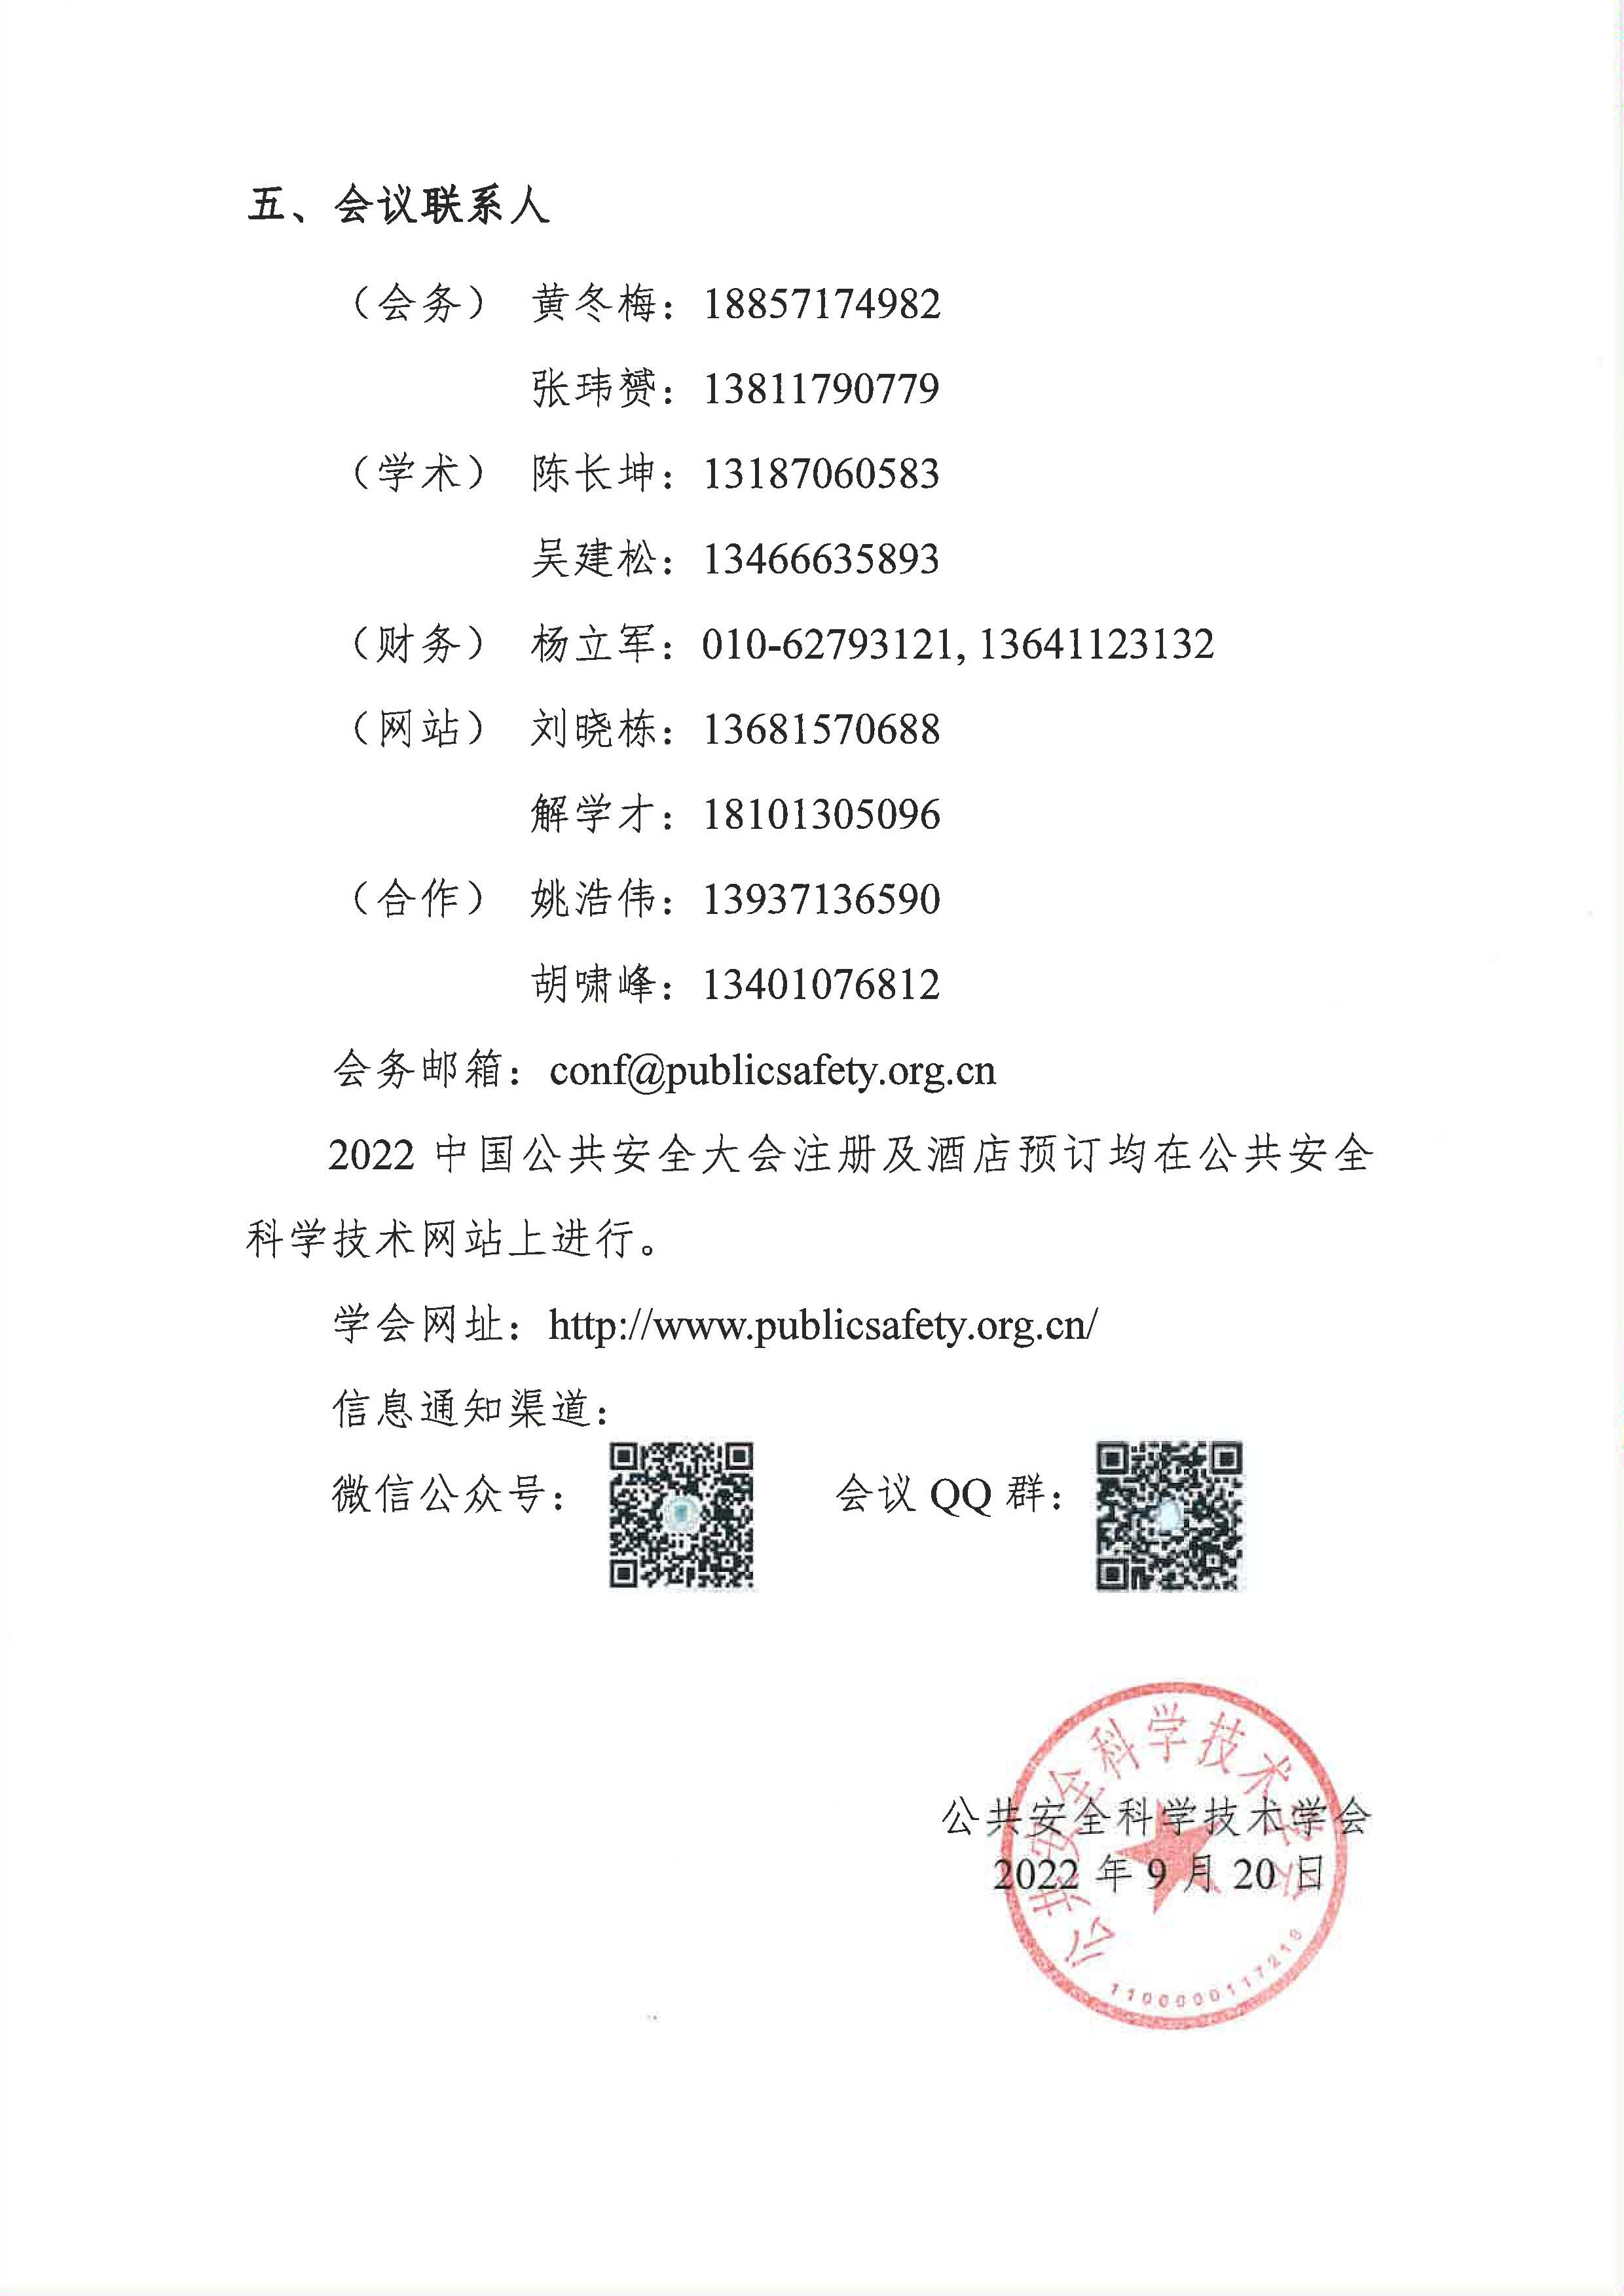 2022中国公共安全大会通知_页面_4.jpg